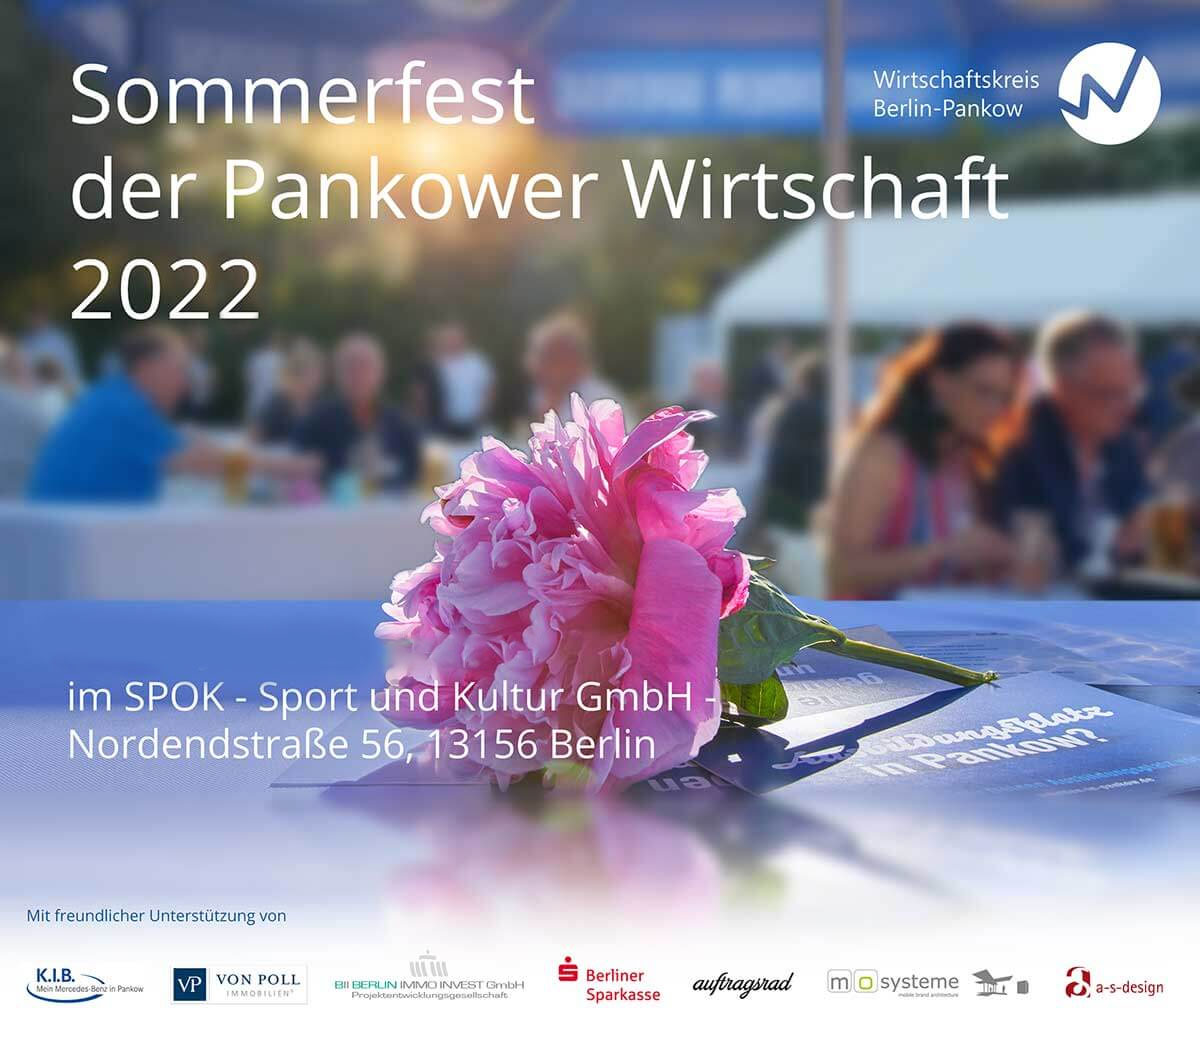 Wirtschaftskreis Berlin-Pankow - Sommerfest der Pankower Wirtschaft